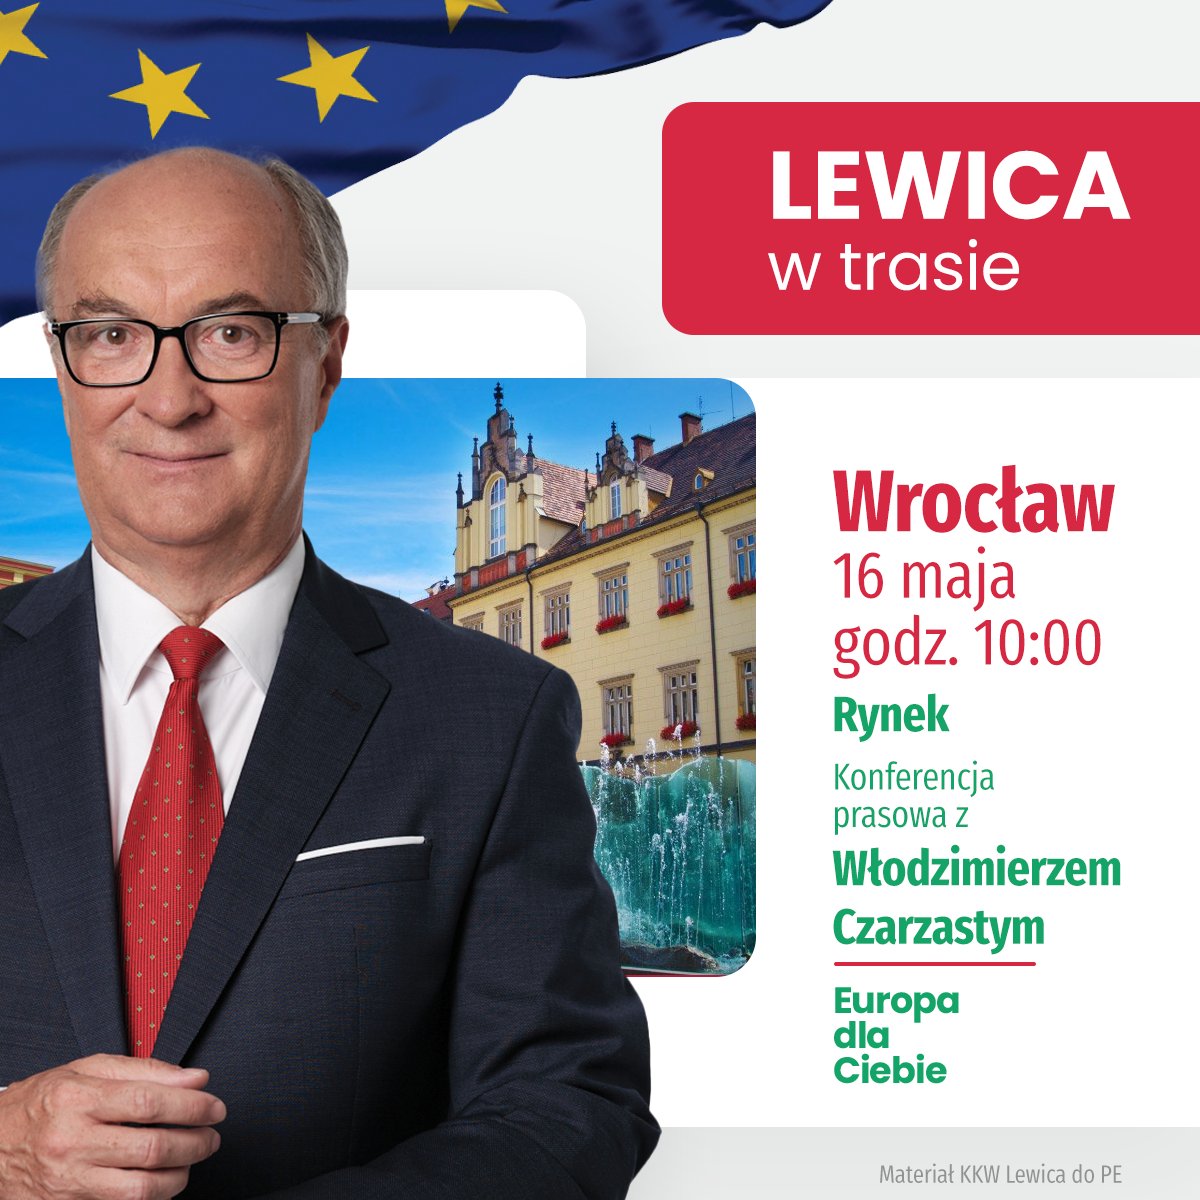 Już jutro spotkajmy się we Wrocławiu! 🔥 Wspólnie z marszałkiem @wlodekczarzasty zapraszamy Was na wrocławski rynek! Bądźcie z nami od 10:00. Do zobaczenia! 👋🏻 #EuropaDlaCiebie